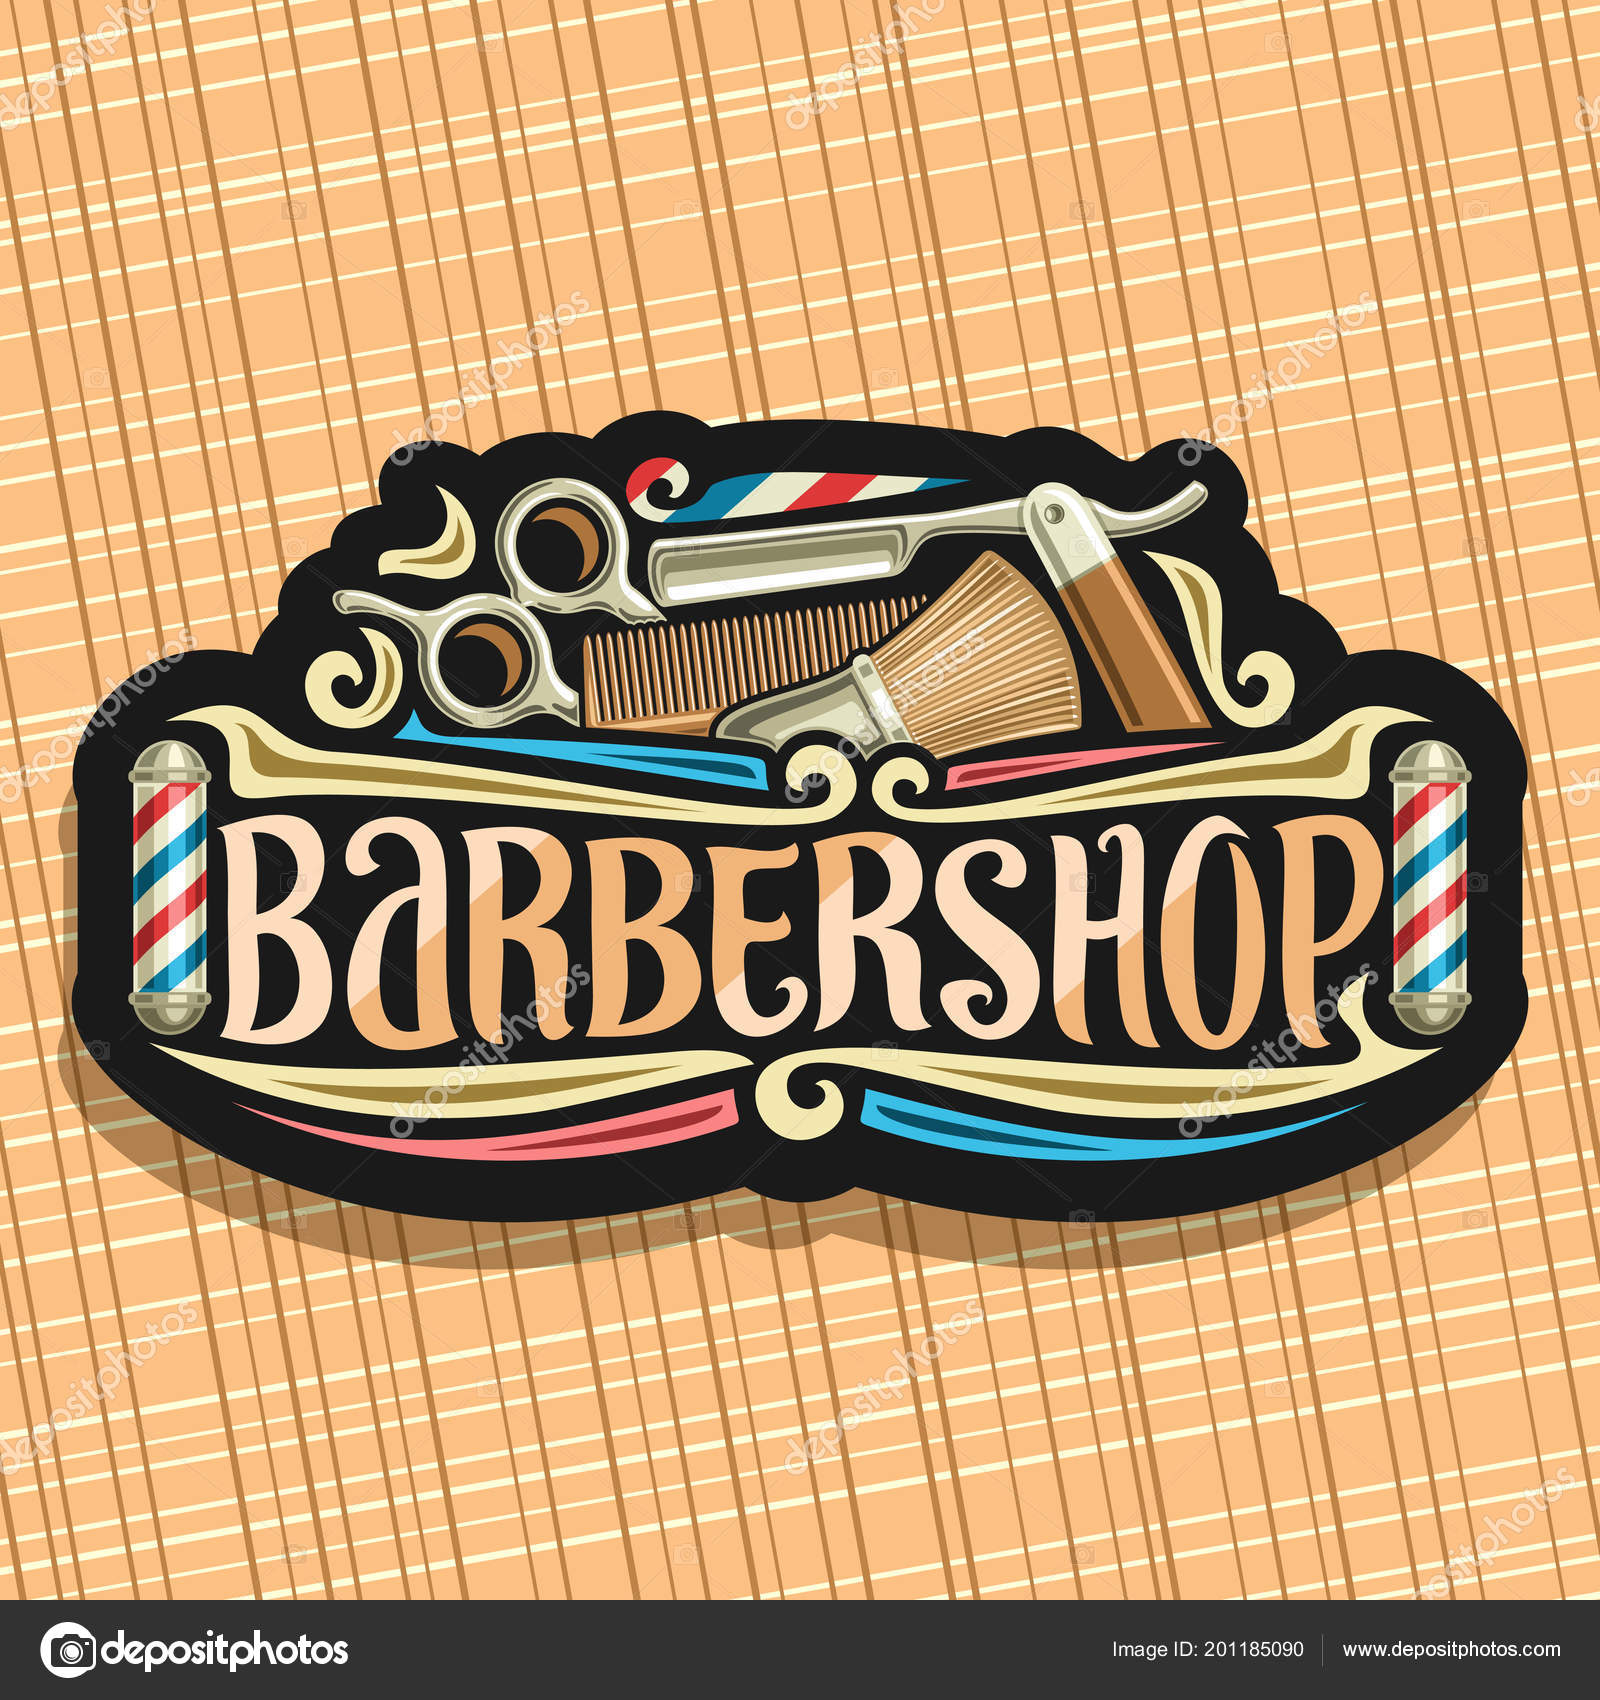 Accesorios para peluquería y Barbershop